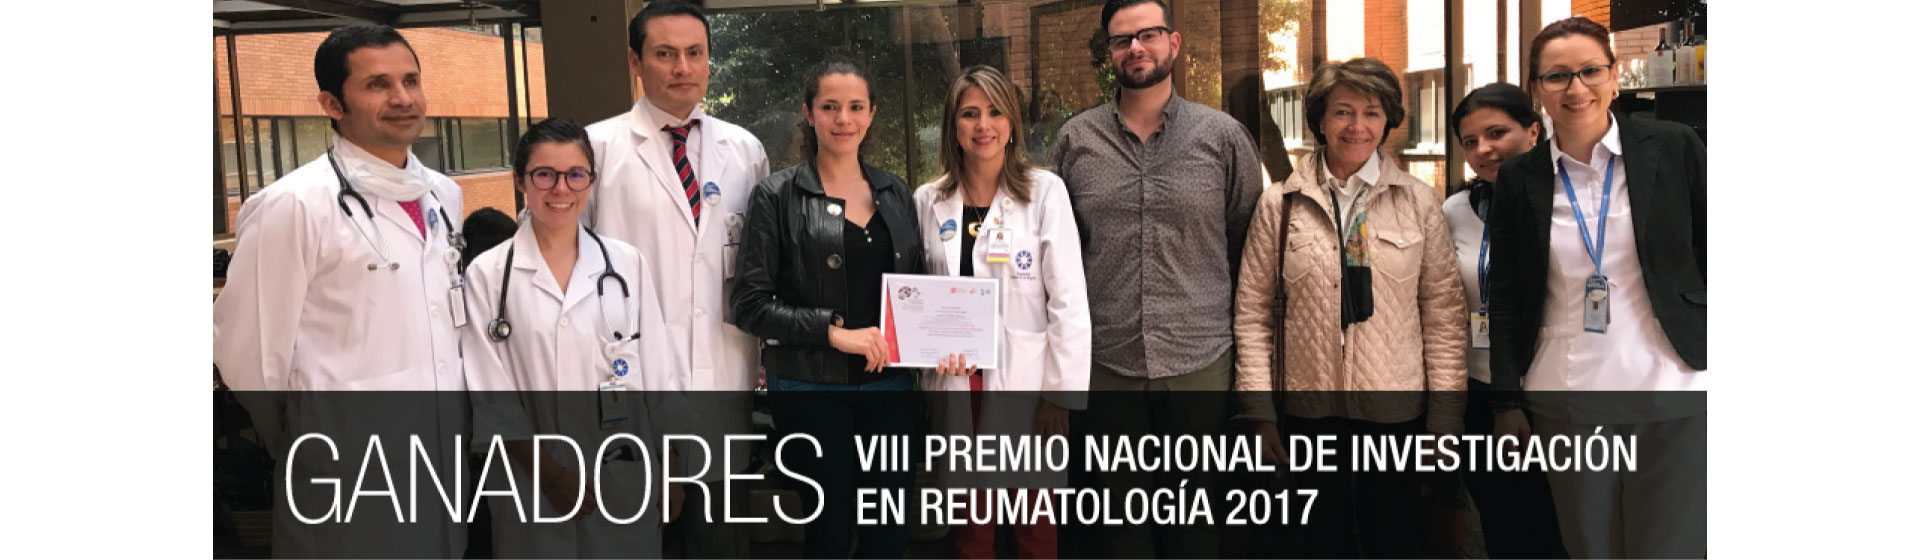 Premio Nacional de Reumatología